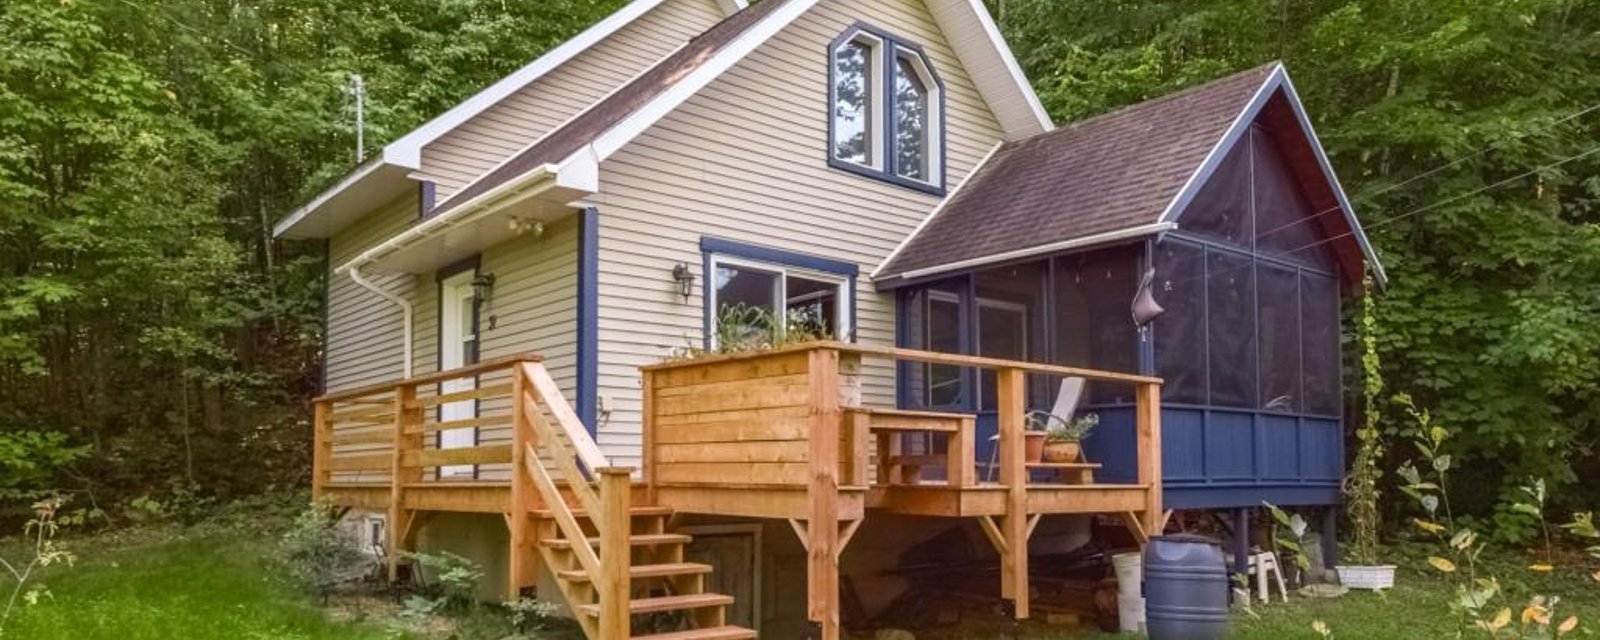 Chaleureusement accueillante, cette maison à 274 900$ vous fera goûter aux bienfaits de la vie en pleine nature